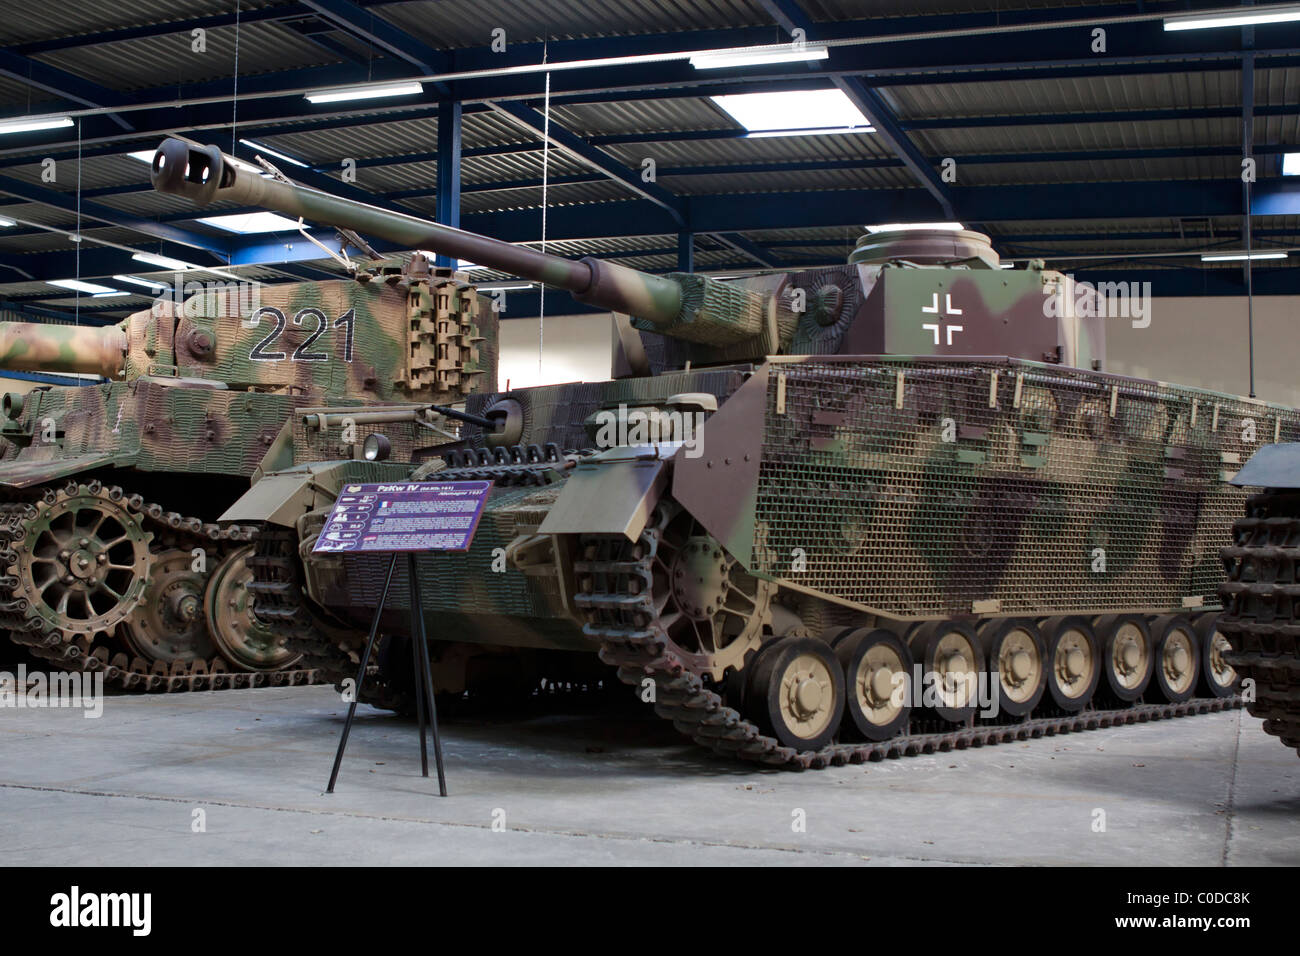 Panzerkampfwagen IV de la Wehrmacht allemande, la seconde guerre mondiale Banque D'Images